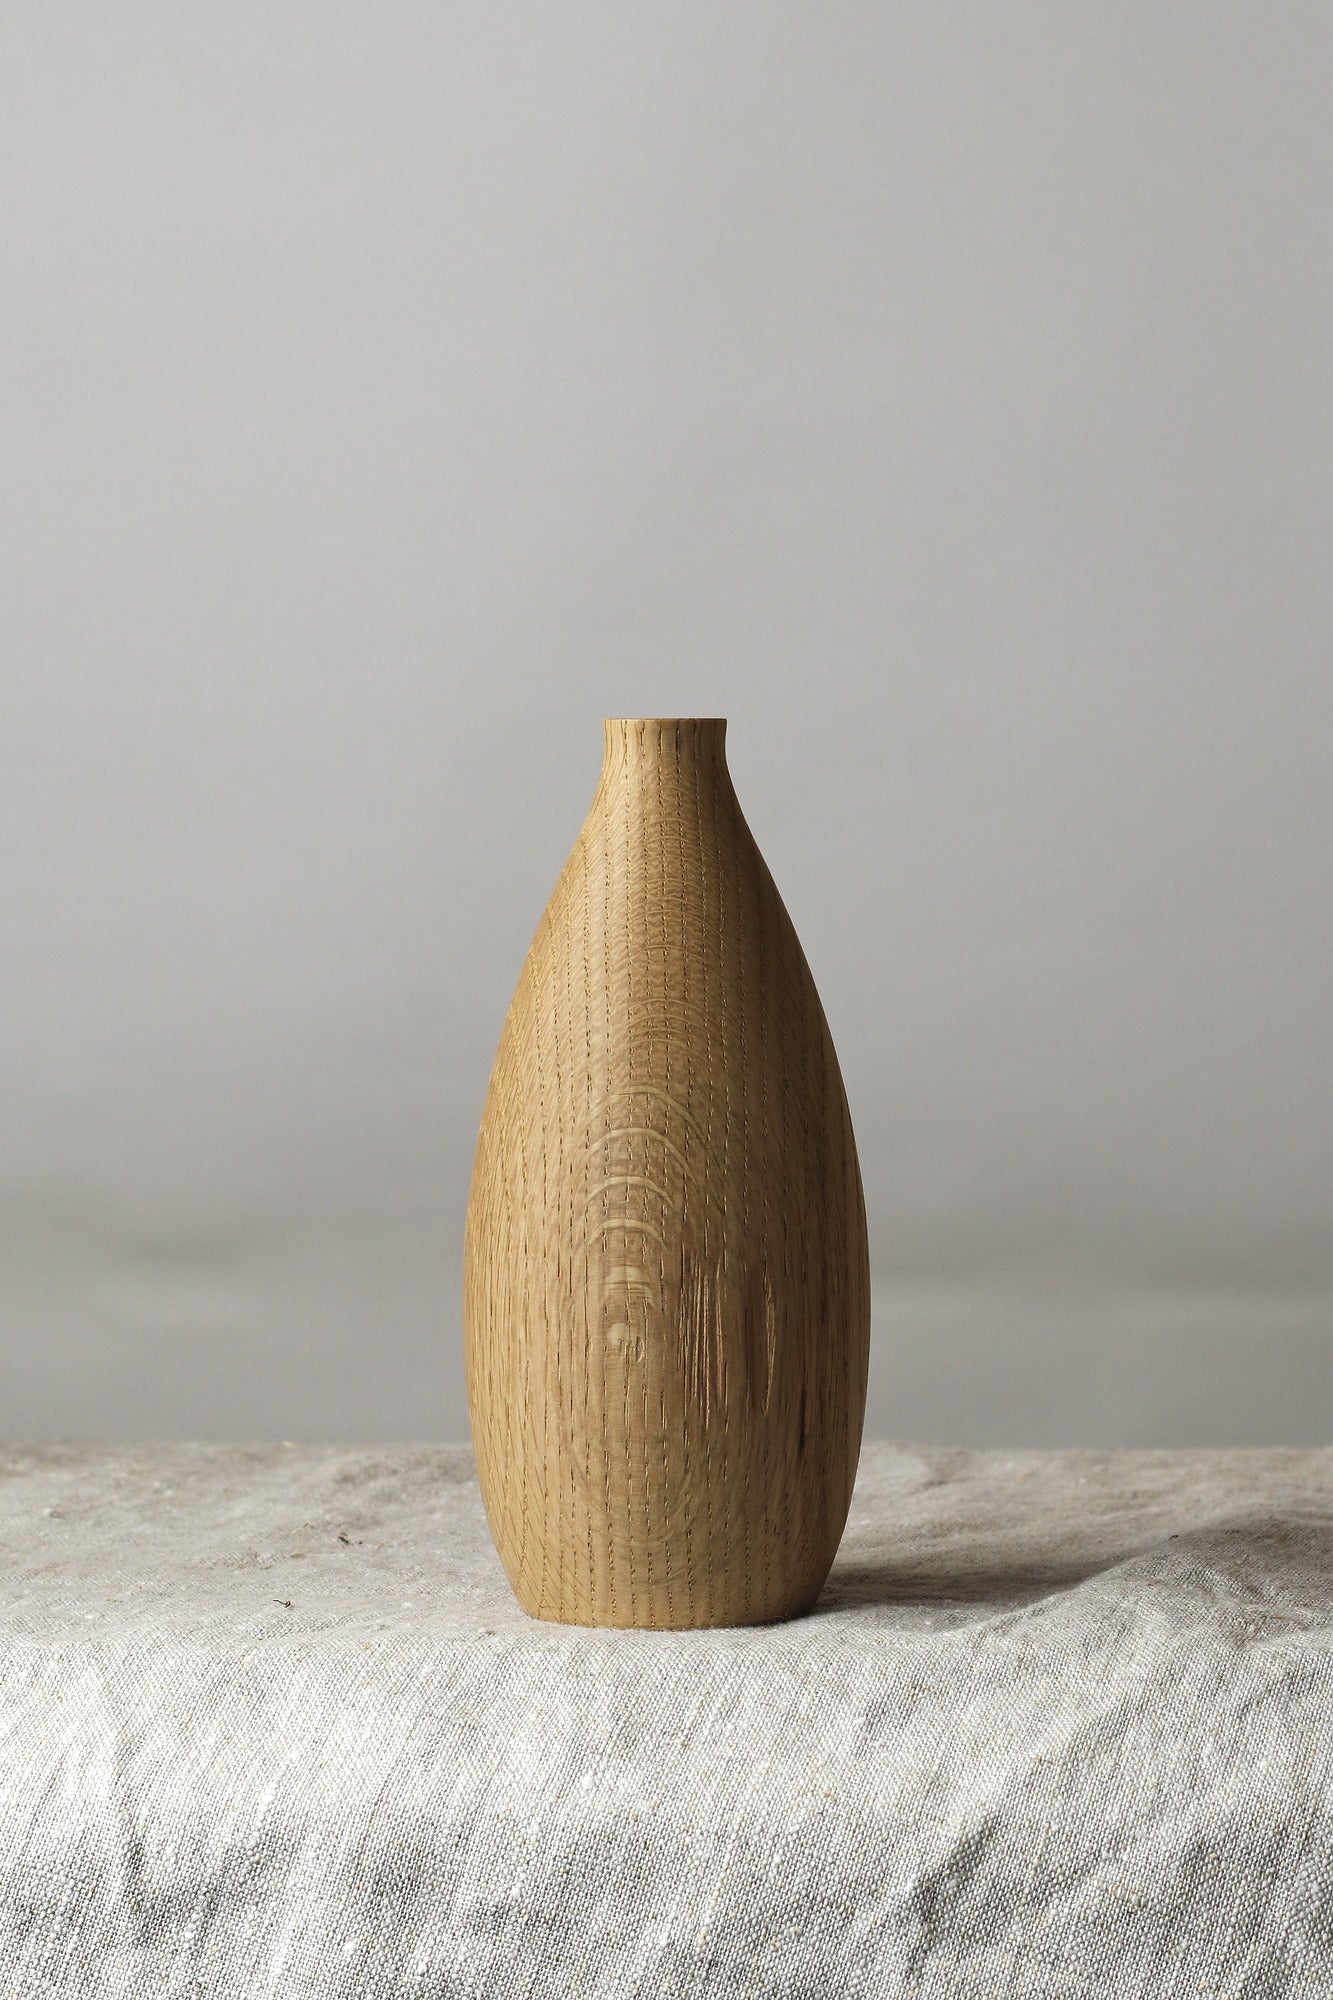 Red Oak Dry Flower Vase - 6.75"